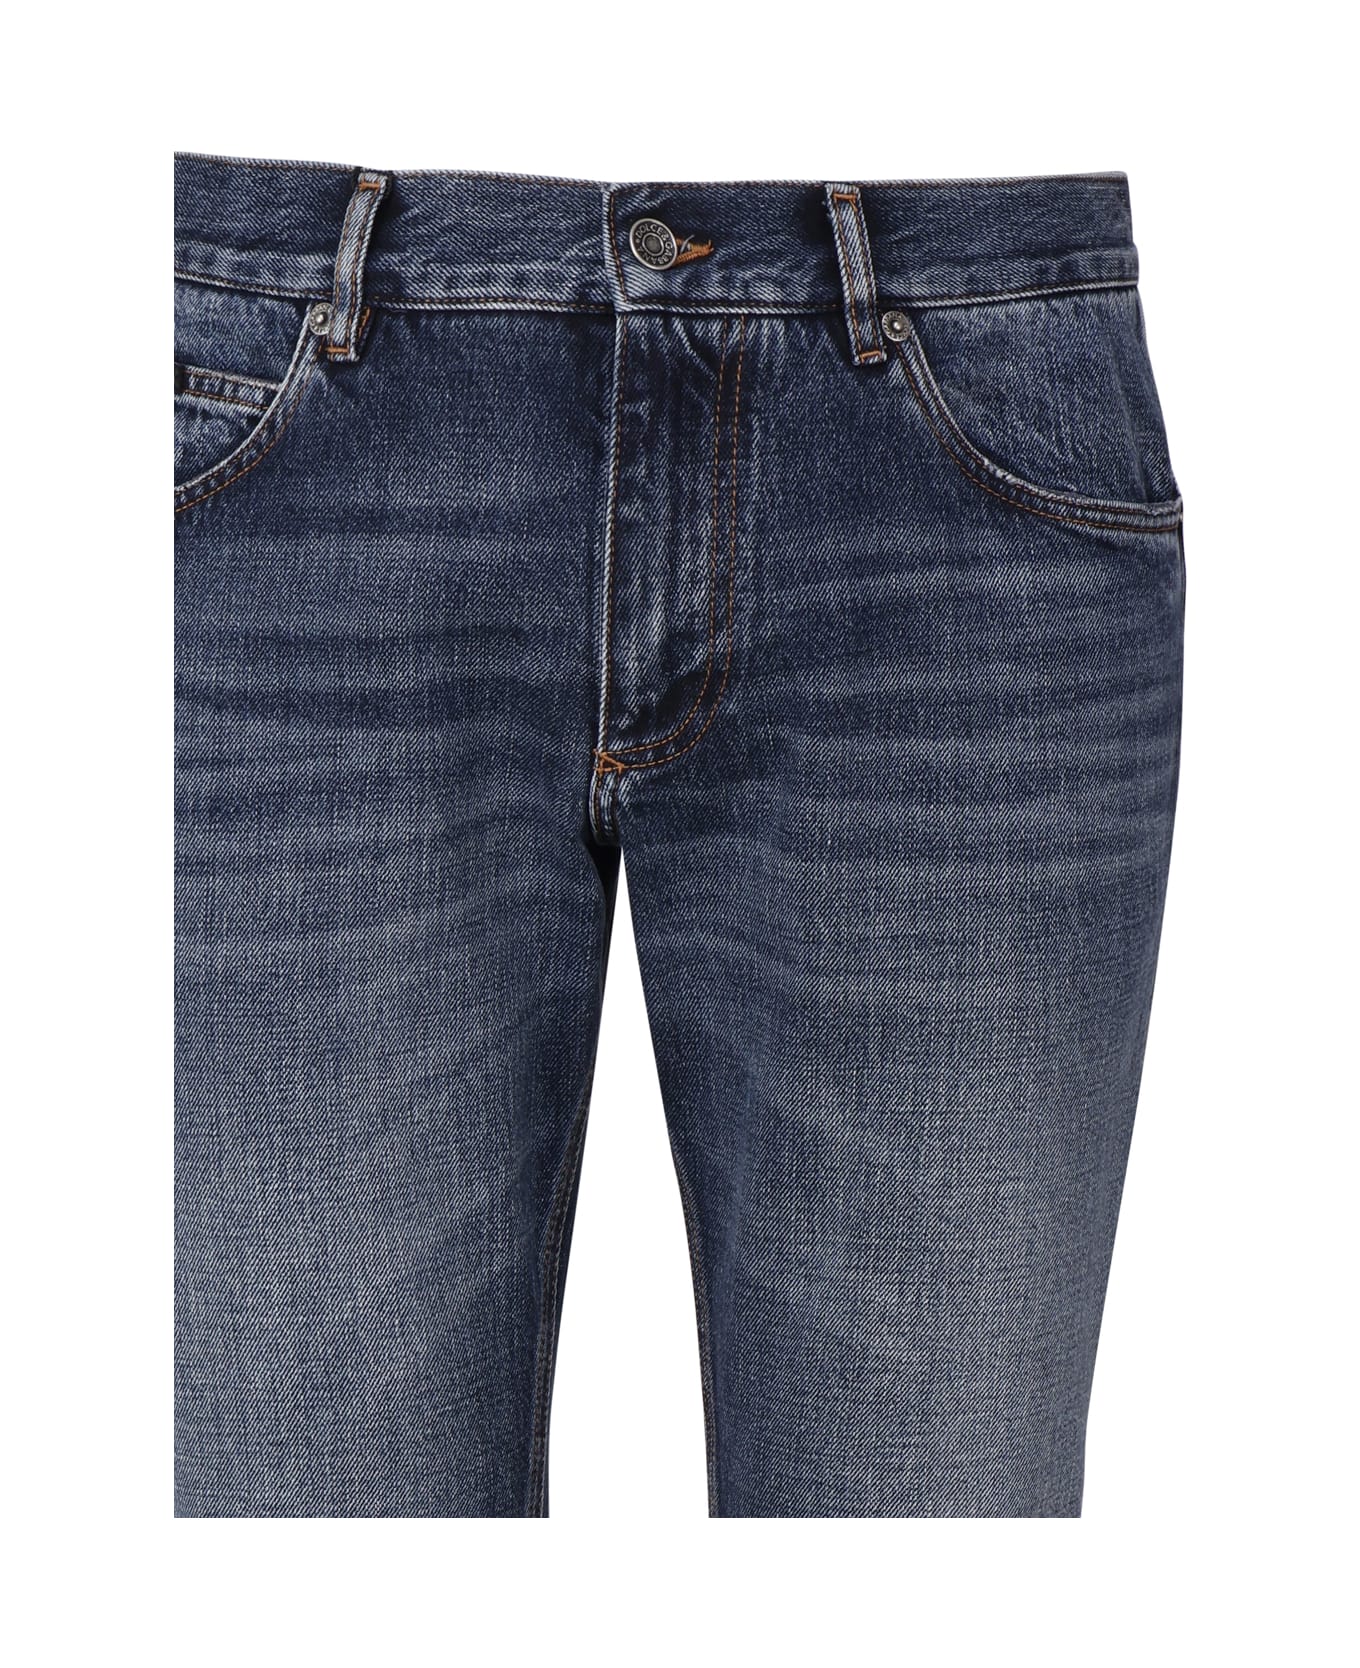 Dolce & Gabbana Regular Five-pocket Model Jeans Made Of Denim - Blue